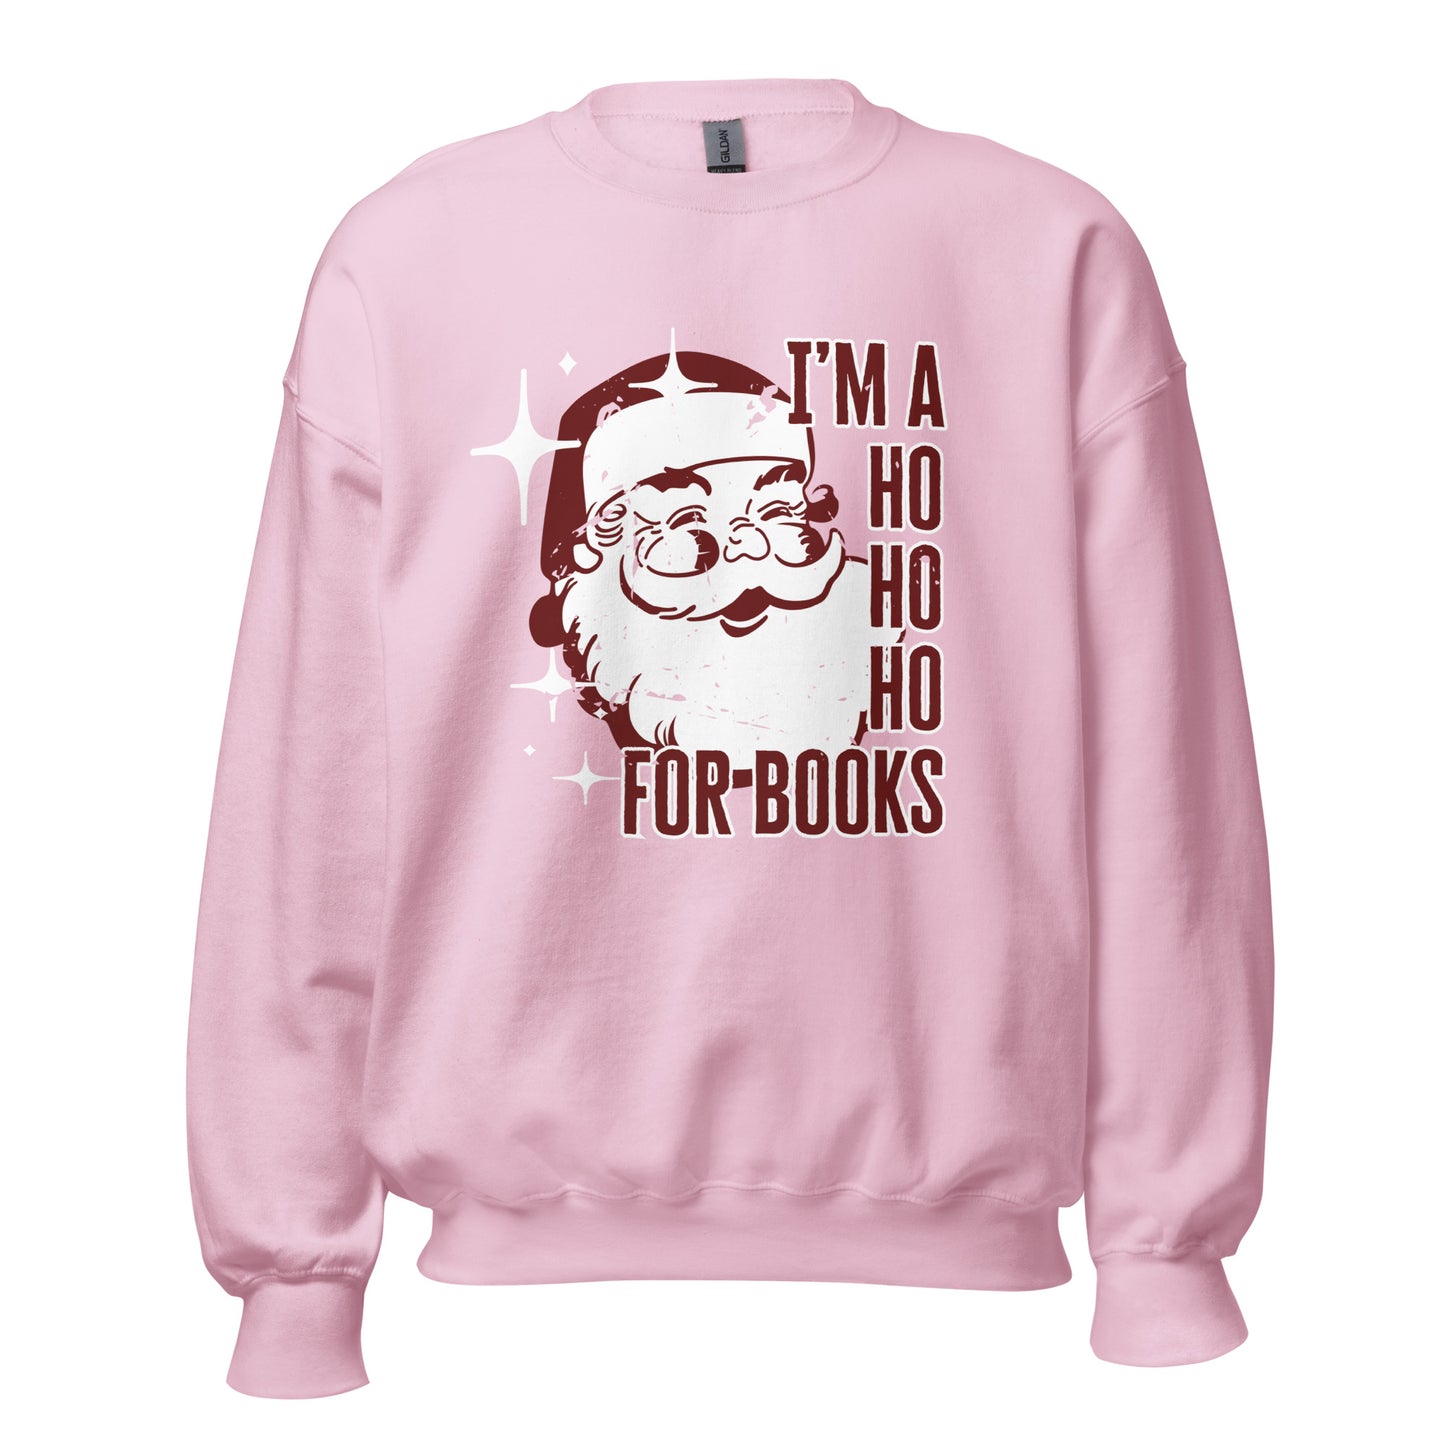 ho ho ho for books sweatshirt